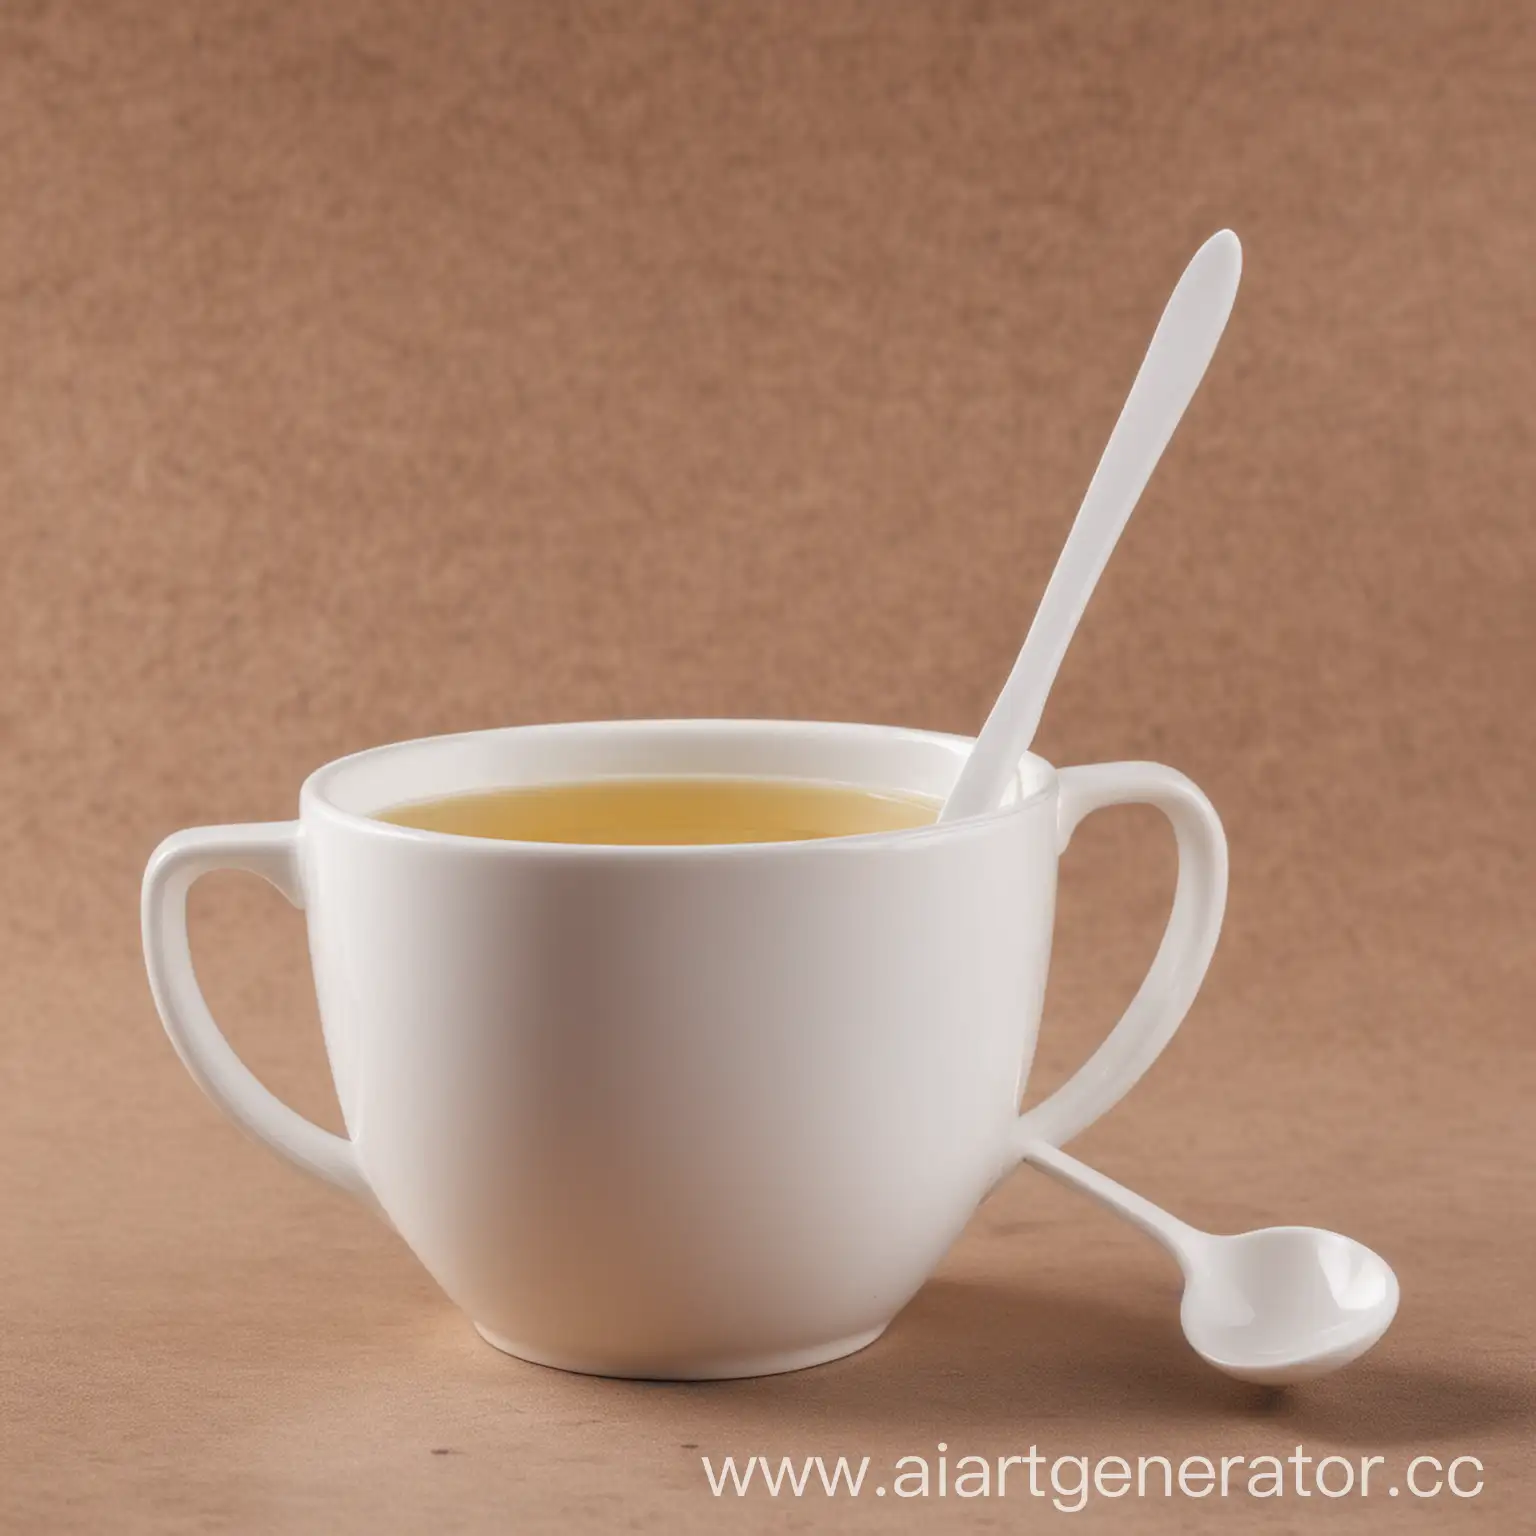 одноразовая пластиковая белая чайная ложка, на фоне кофейной чашки